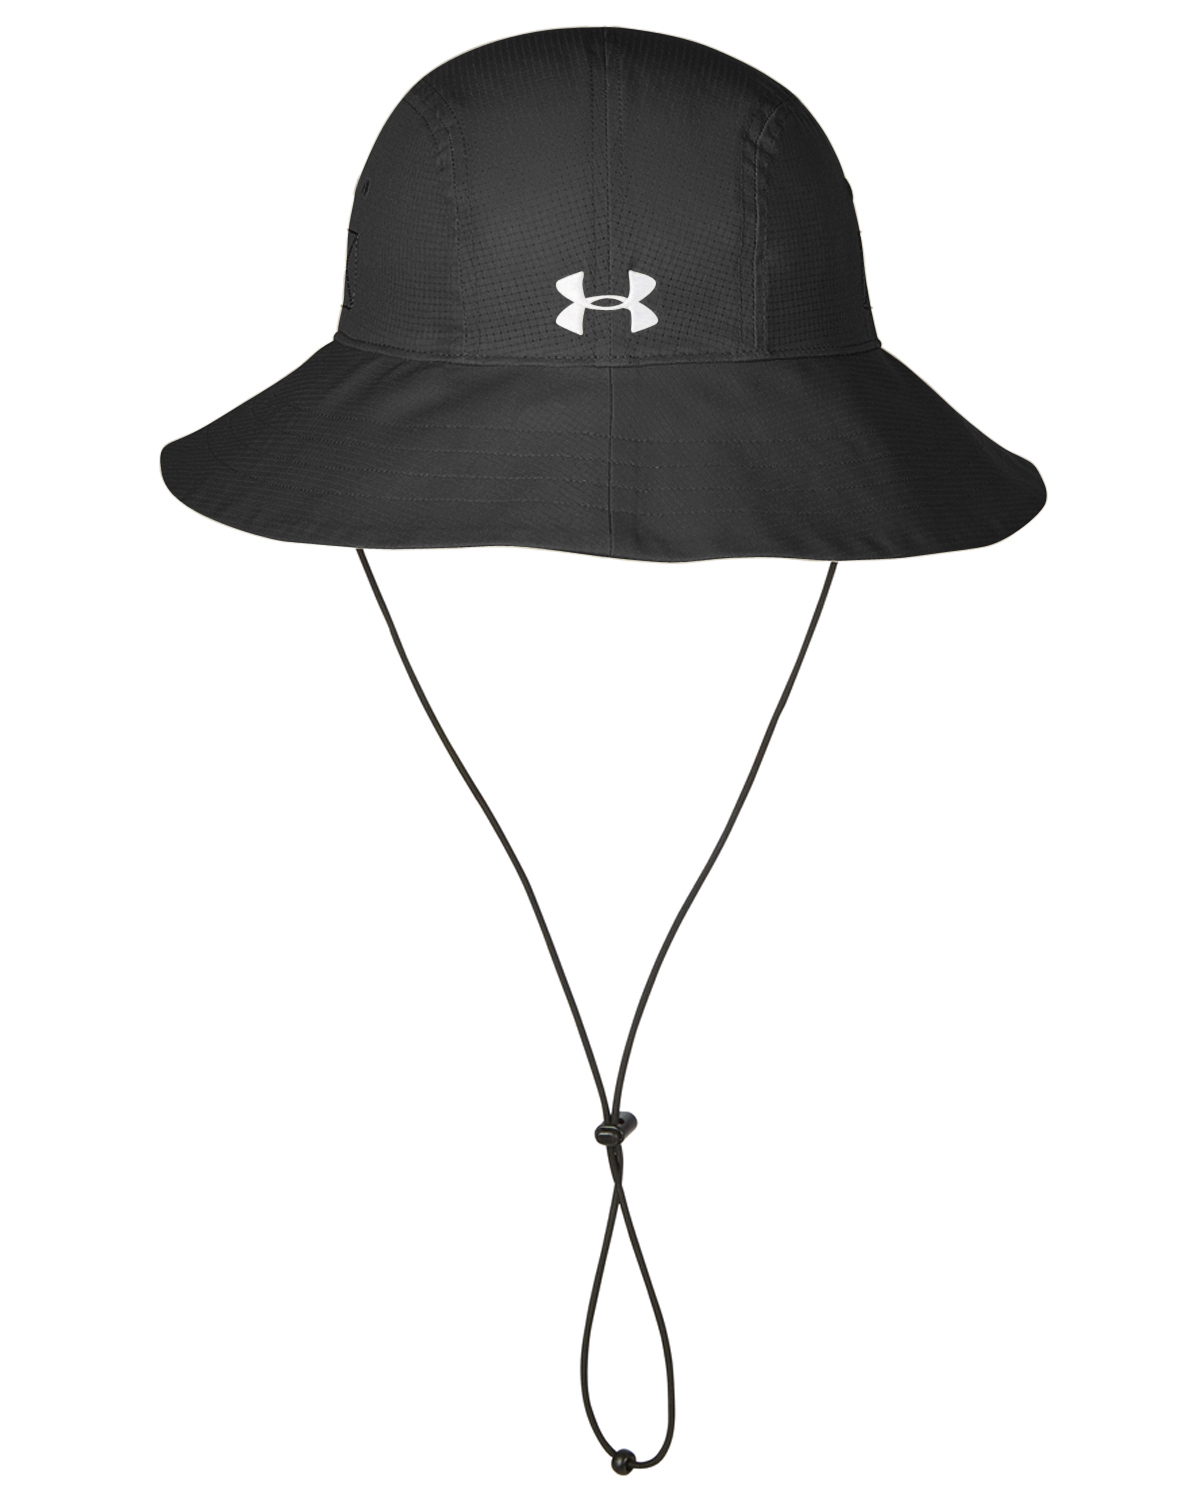 Under Armour 1282218 - Warrior Solid Bucket Hat